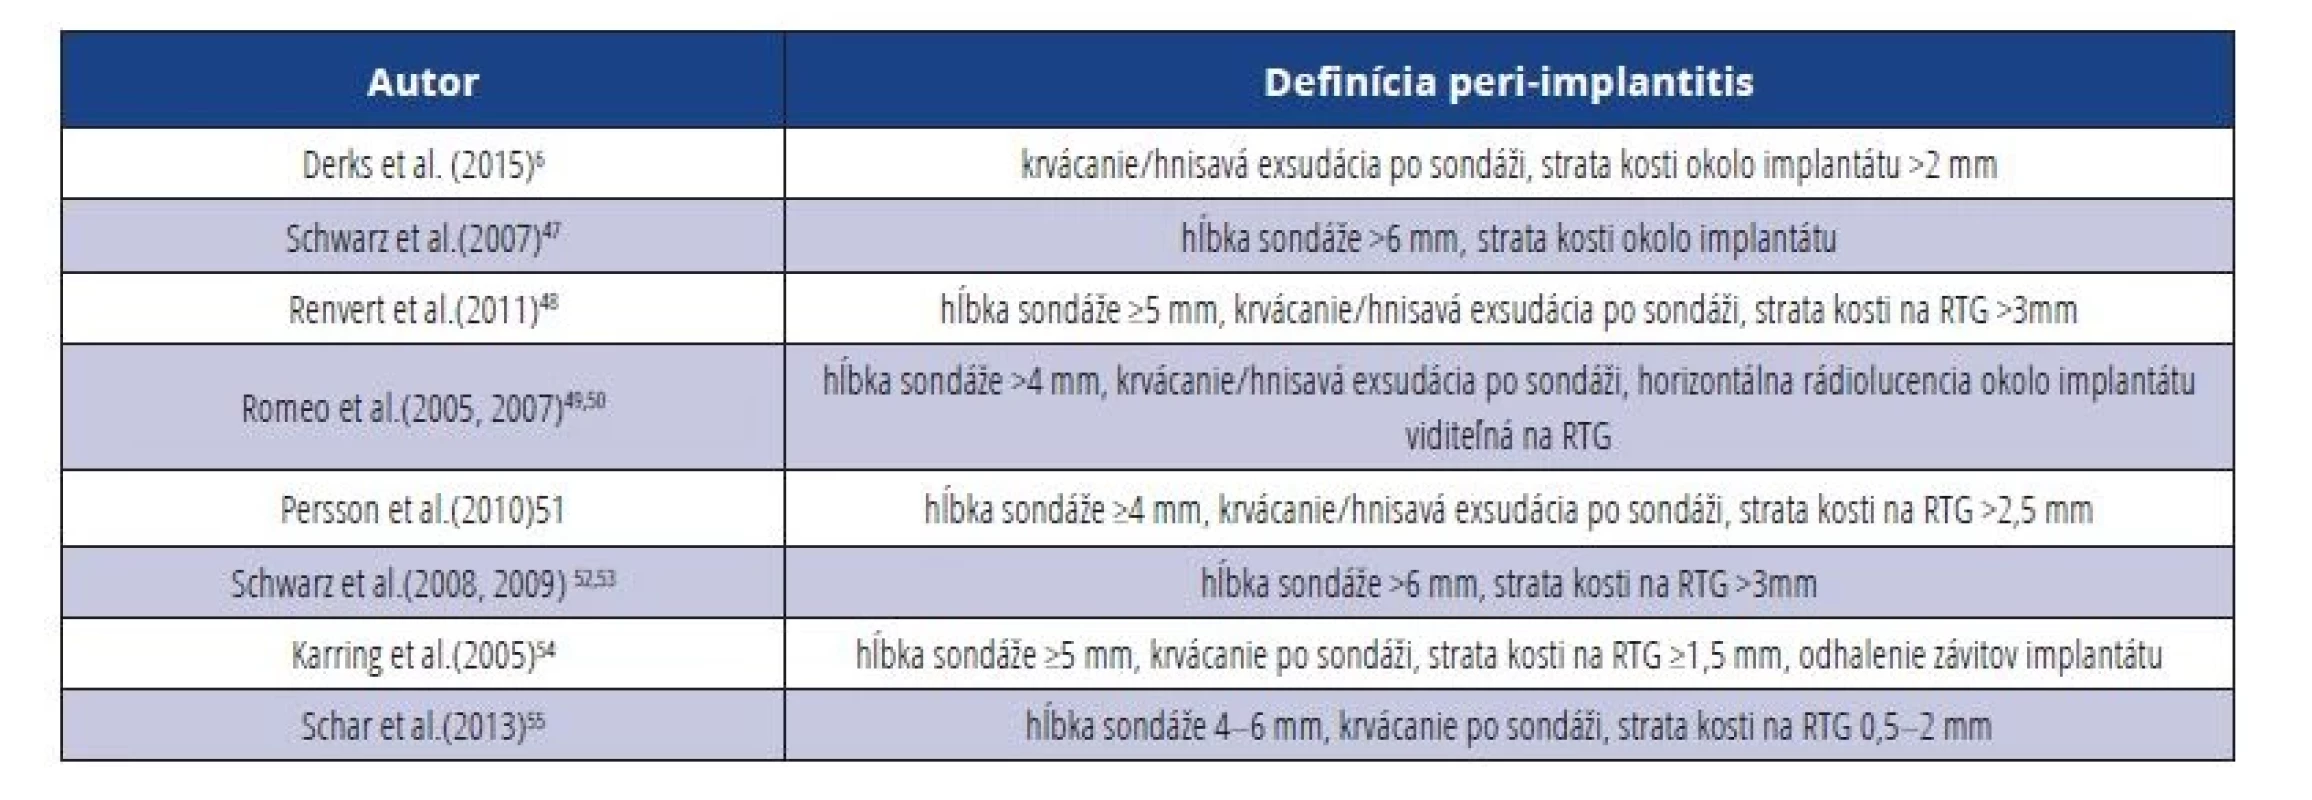 Porovnanie diagnostických kritérií pre peri-implantitídu.<br>
Tab. 4 Comparison of diagnostic criteria for peri-implantitis.